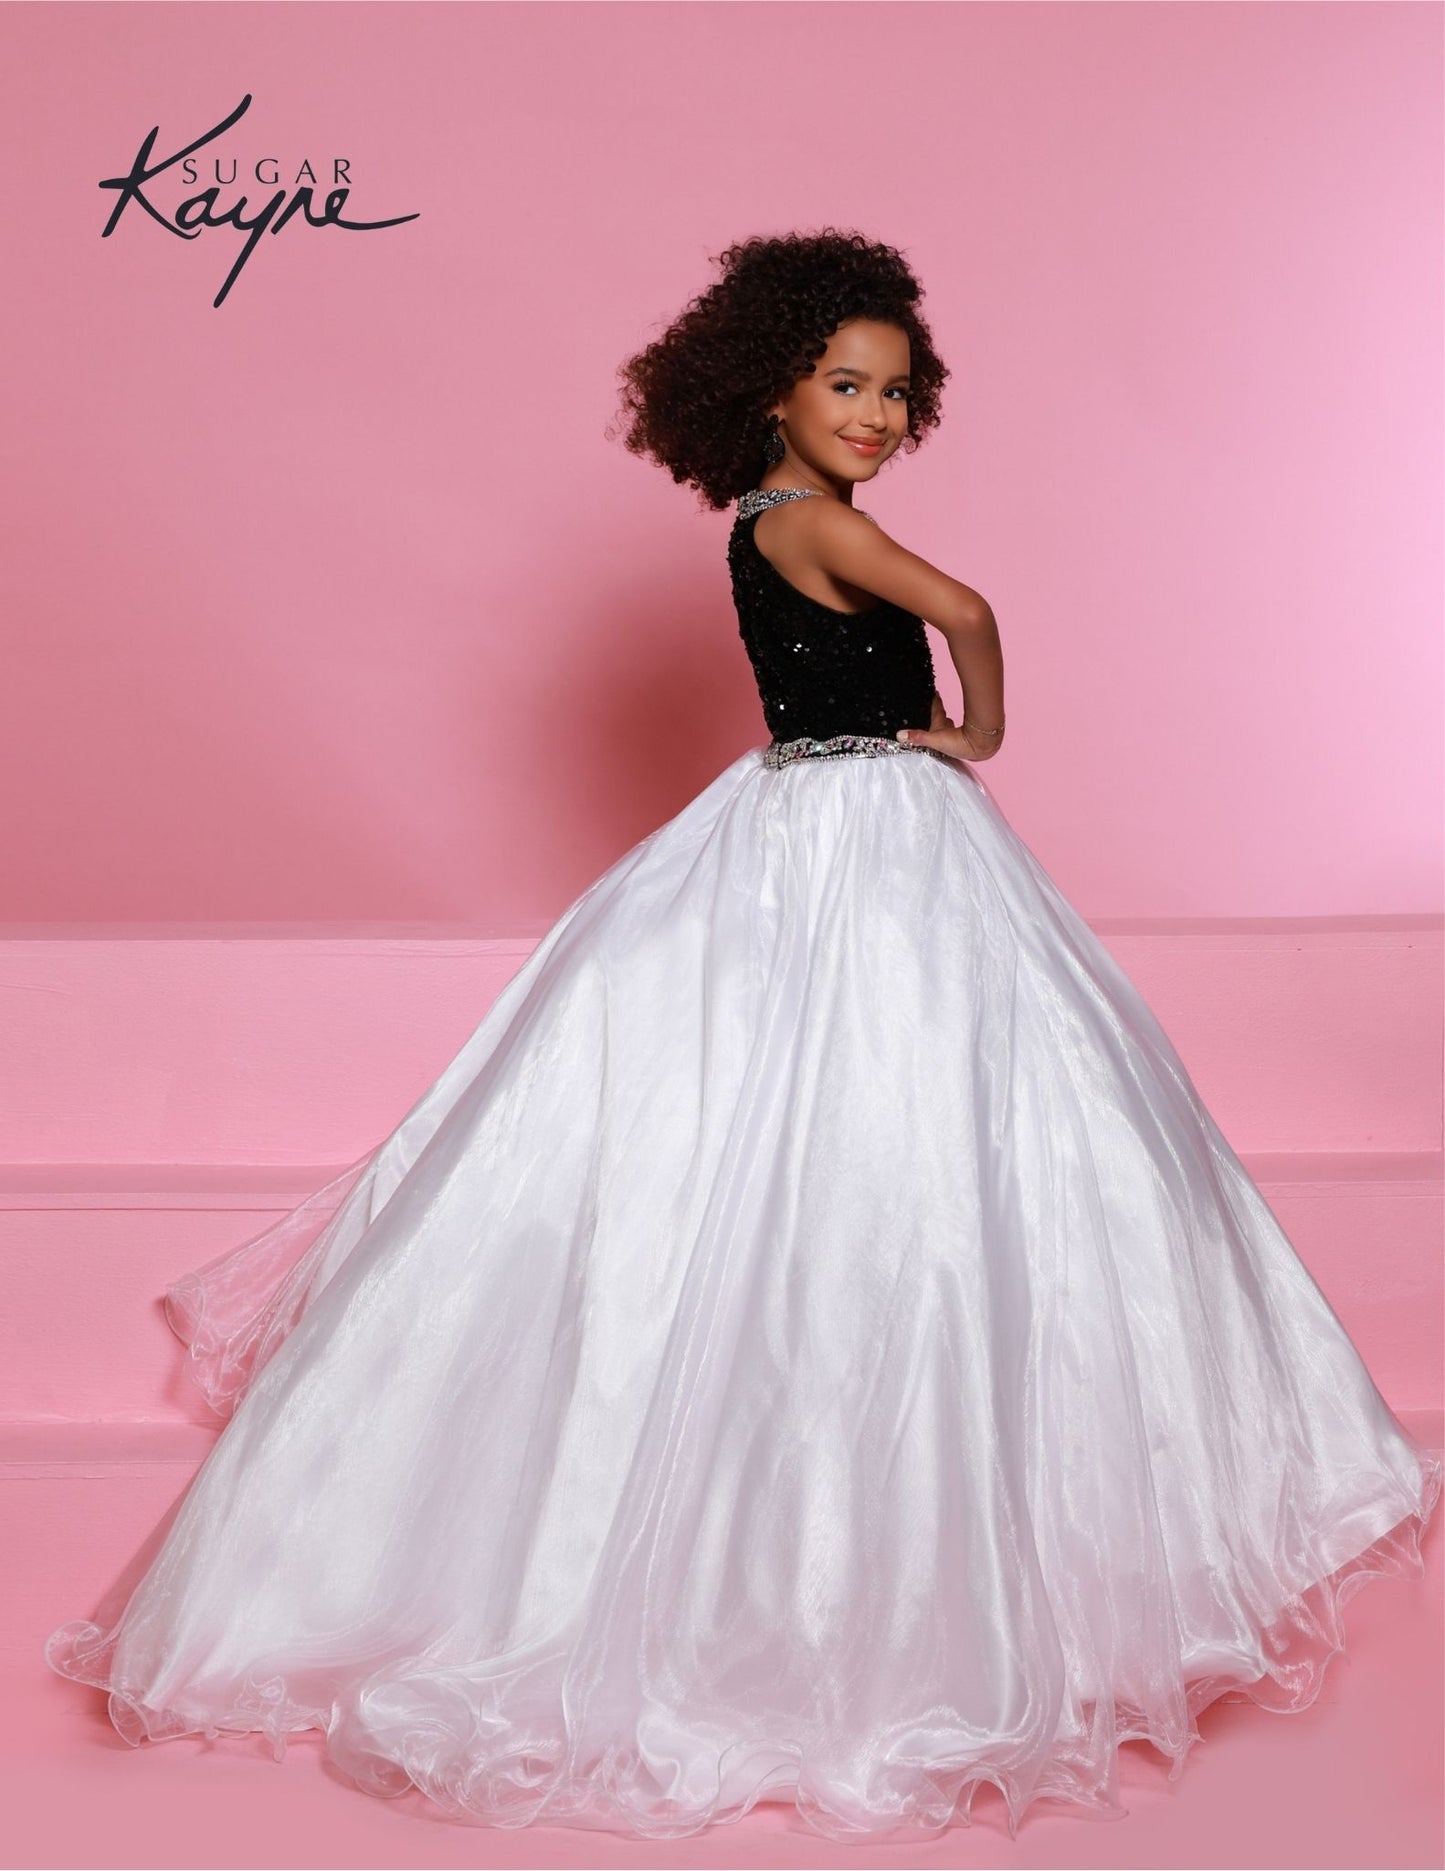 Sugar Kayne C321 Black White Velvet Sequin High neck Girls Pageant Dress Shimmer Ball gown